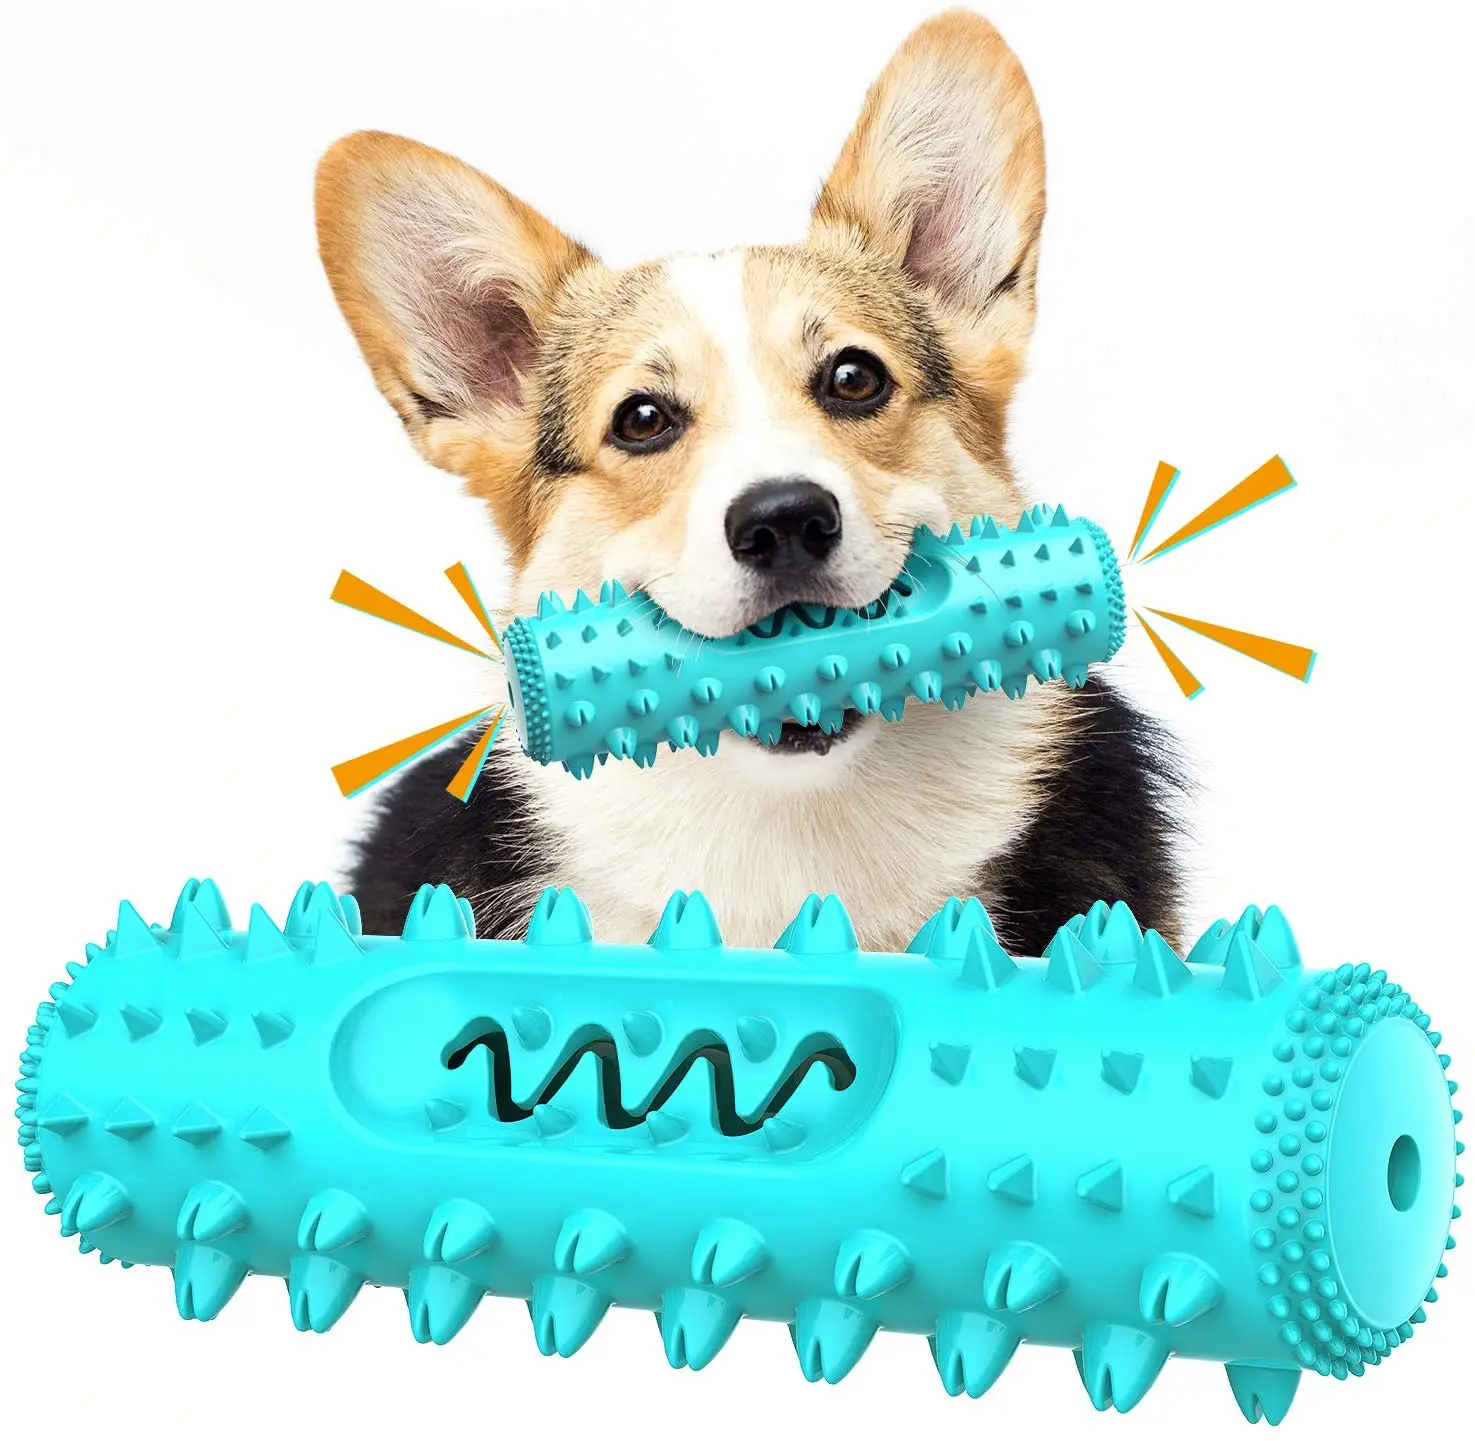 

Собака Зубная щётка одежды собаки игрушечная трость из мягкой резины для чистки зубов точечный массаж зубная паста зубная щетка для животн...